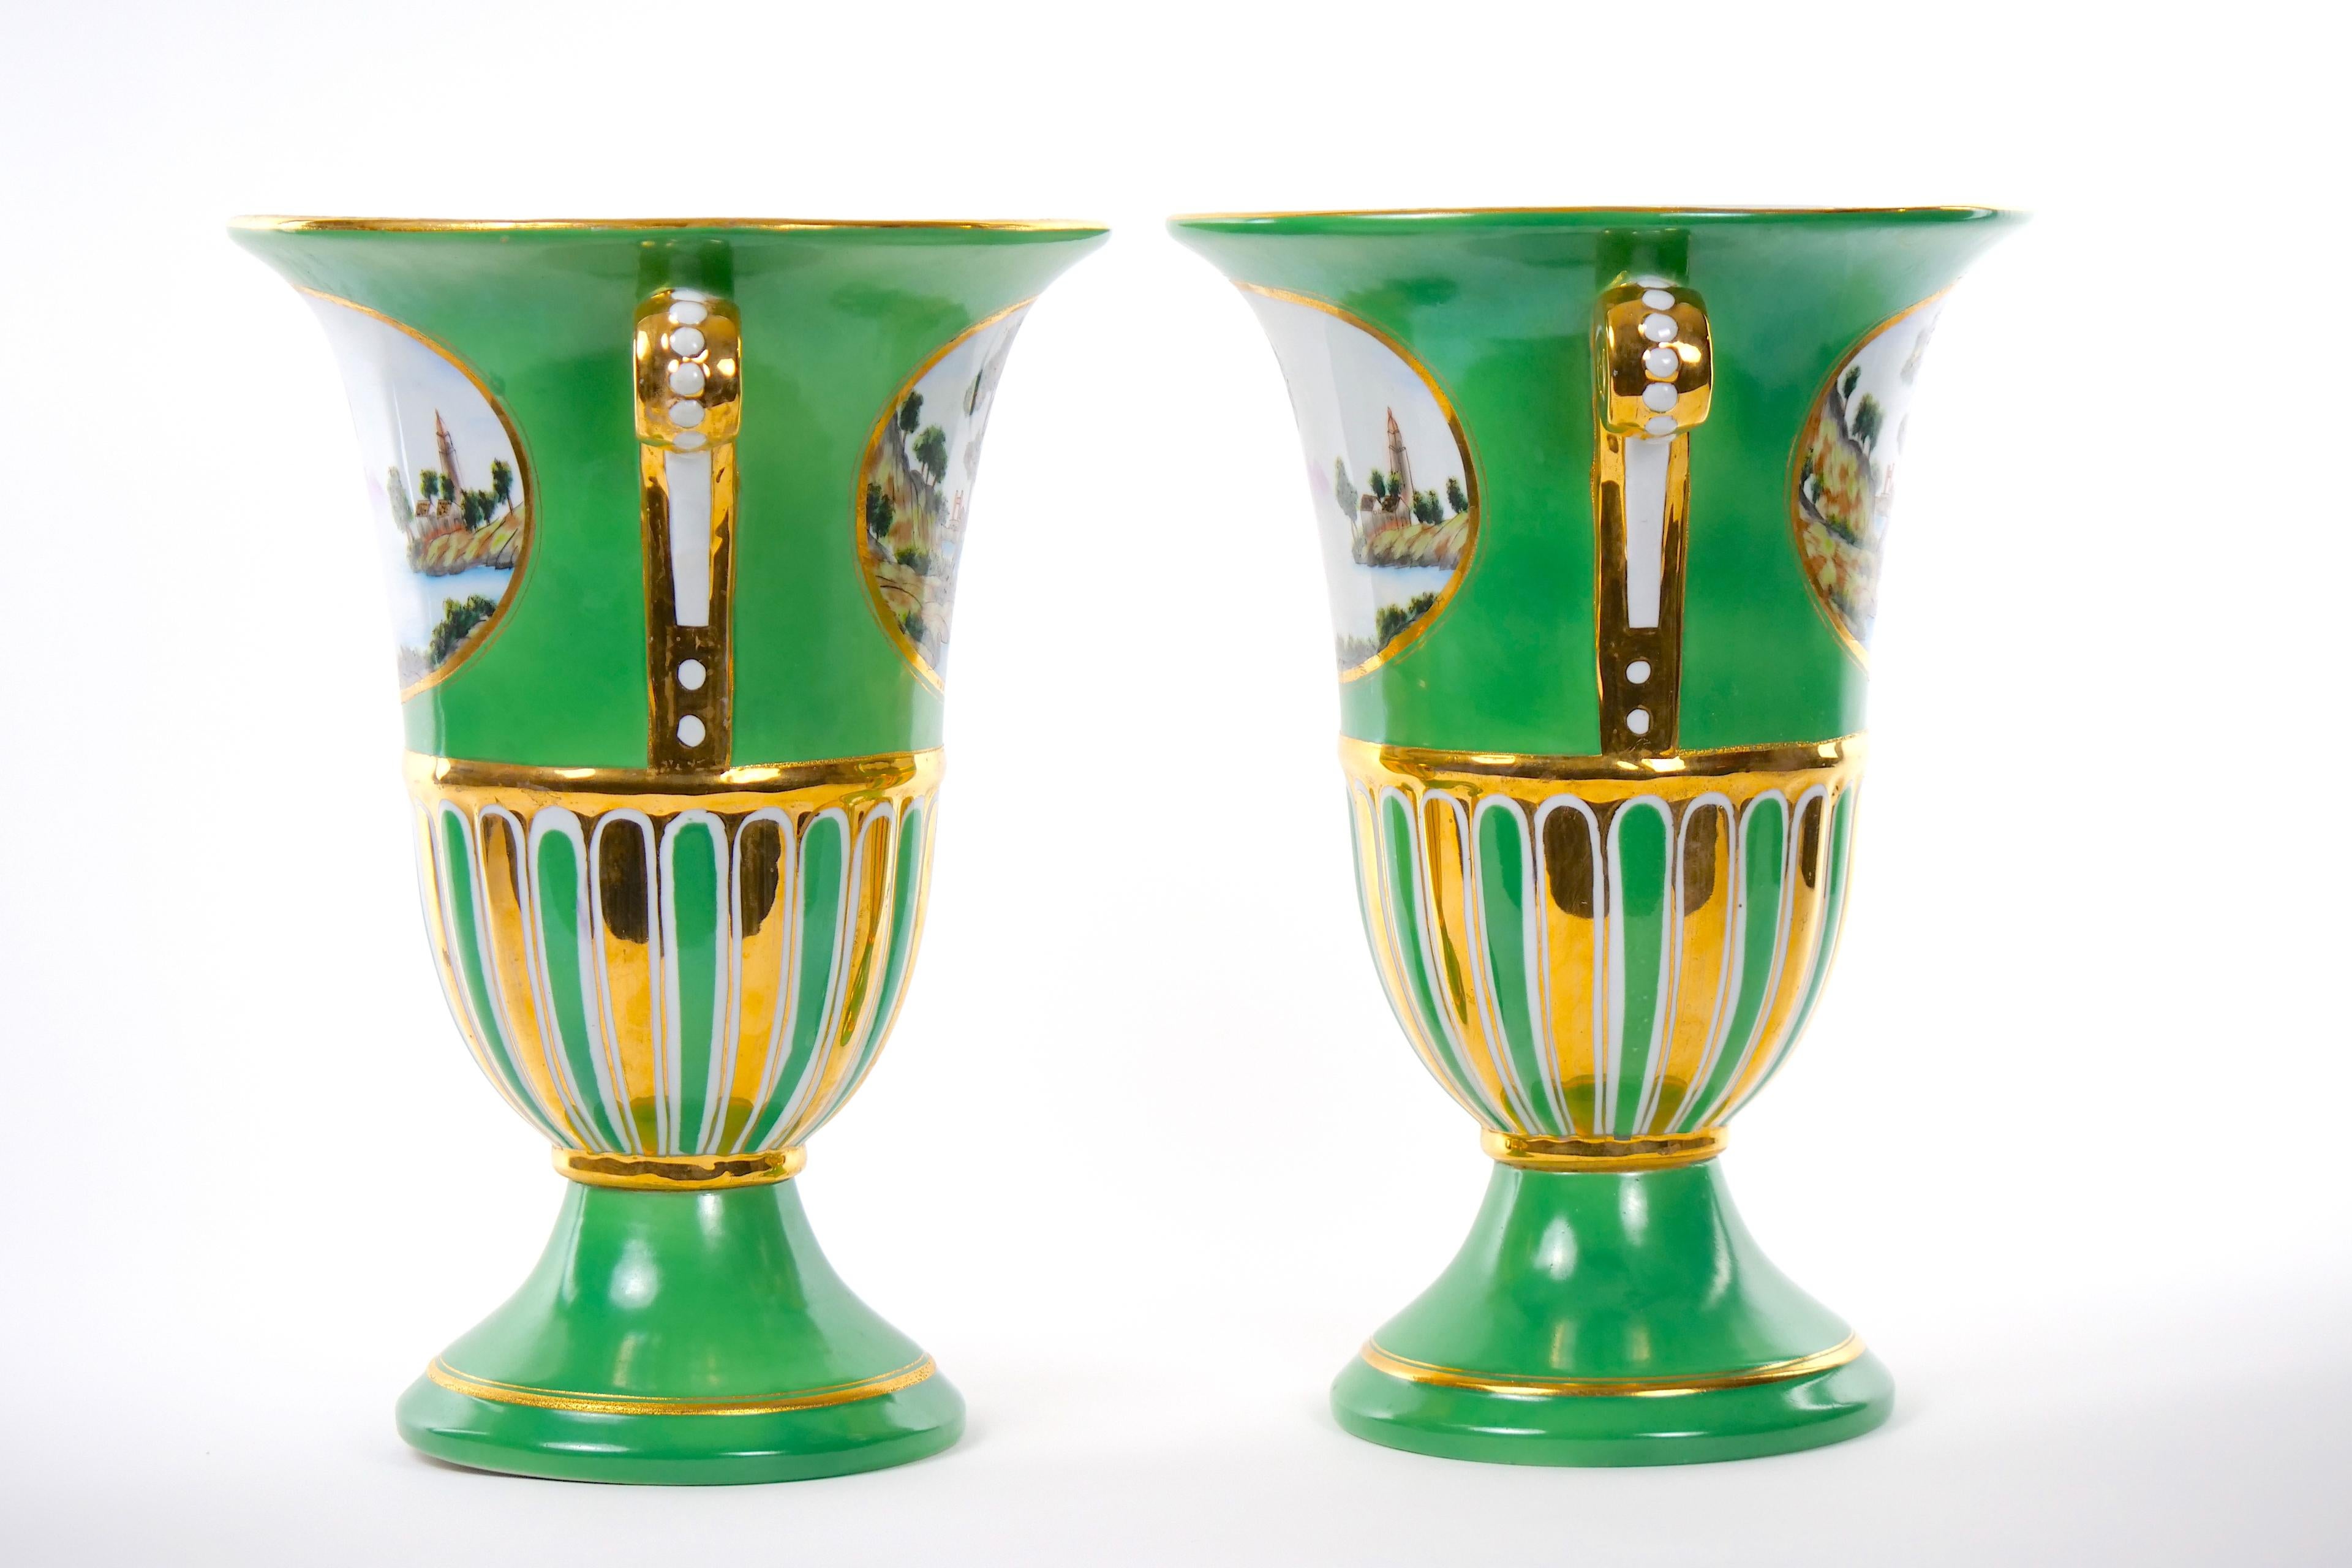 
Treten Sie ein in die Welt der raffinierten Schönheit und lassen Sie sich von dieser außergewöhnlichen dekorativen Vase aus Pariser Porzellan des frühen 20. Jahrhunderts verzaubern. In sorgfältiger Handarbeit und mit unvergleichlicher